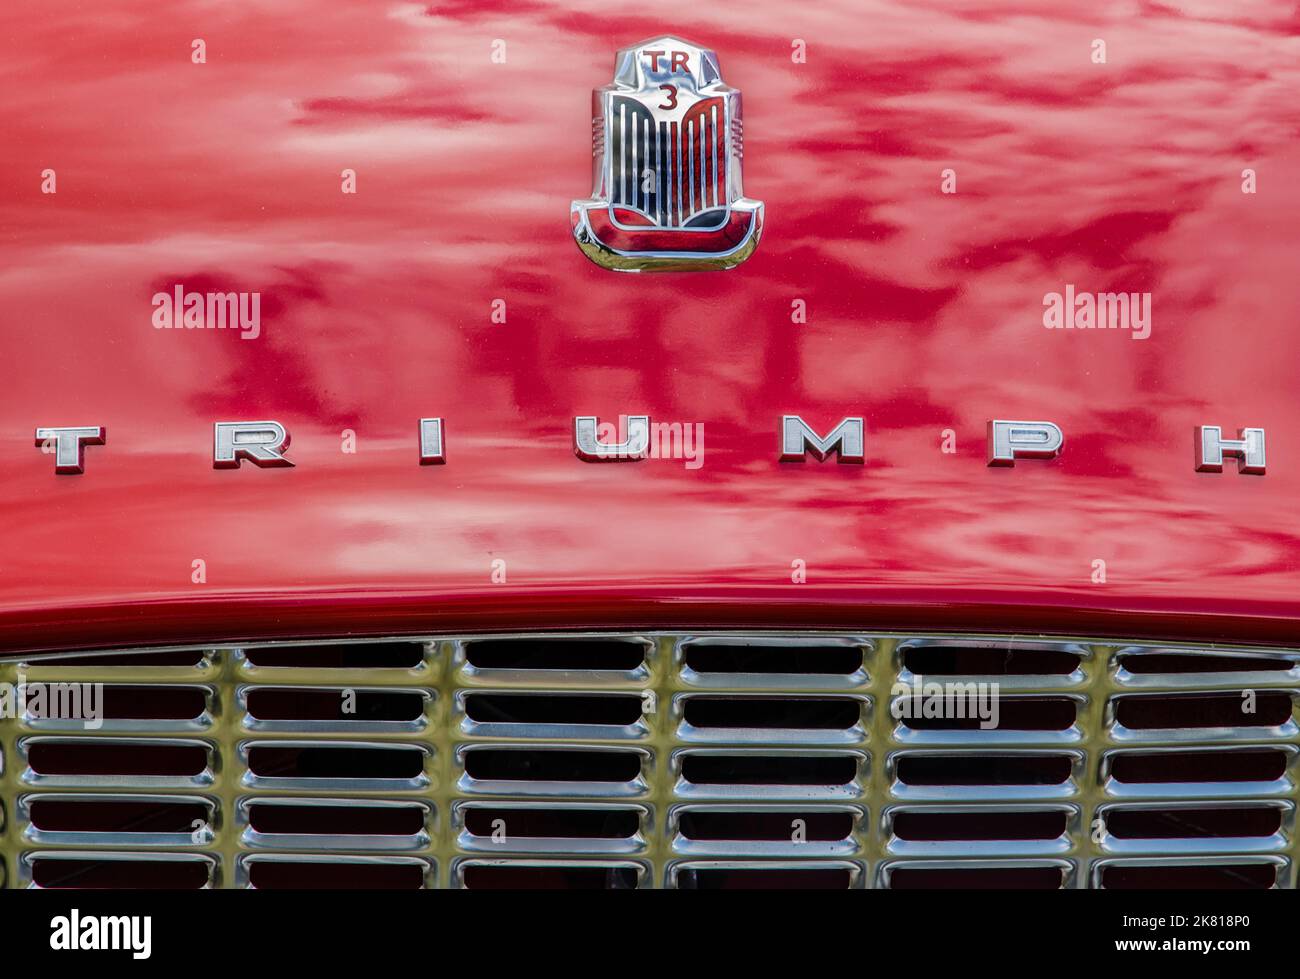 Vista frontal de un Triumph TR3 rojo que muestra las insignias cromadas y la rejilla del radiador Foto de stock